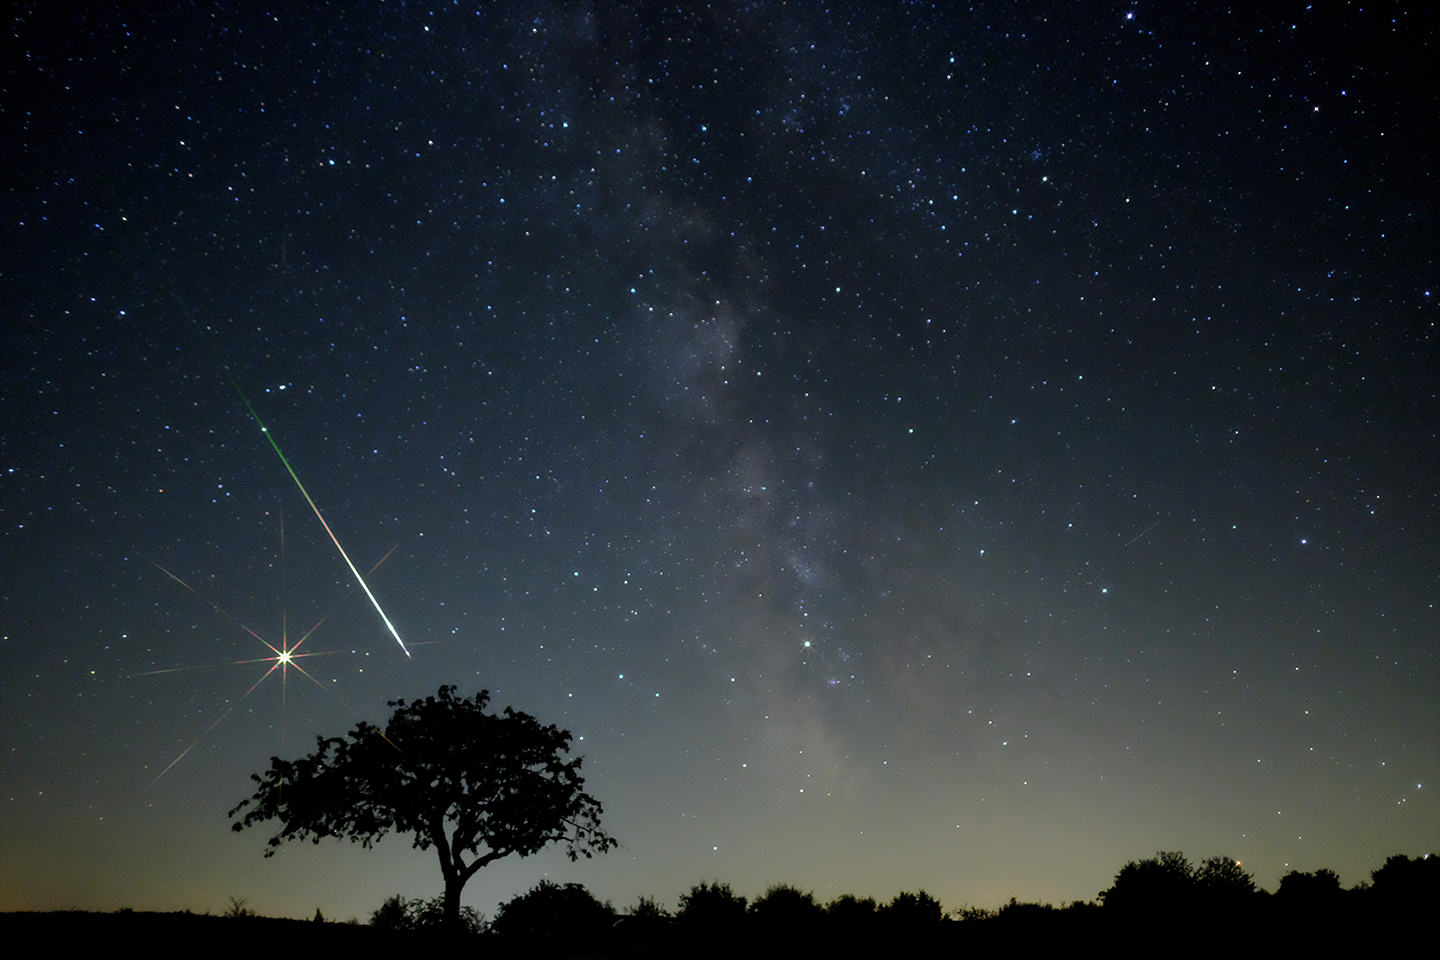 Nachtaufnahme mit dunkler Silhouette einer Landschaft mit einem großen Baum in der linken unteren Bildhälfte vor einem dunkel blauen Nachthimmel mit vielen funkelnden Sternen, der zum Boden hin gelb leuchtet